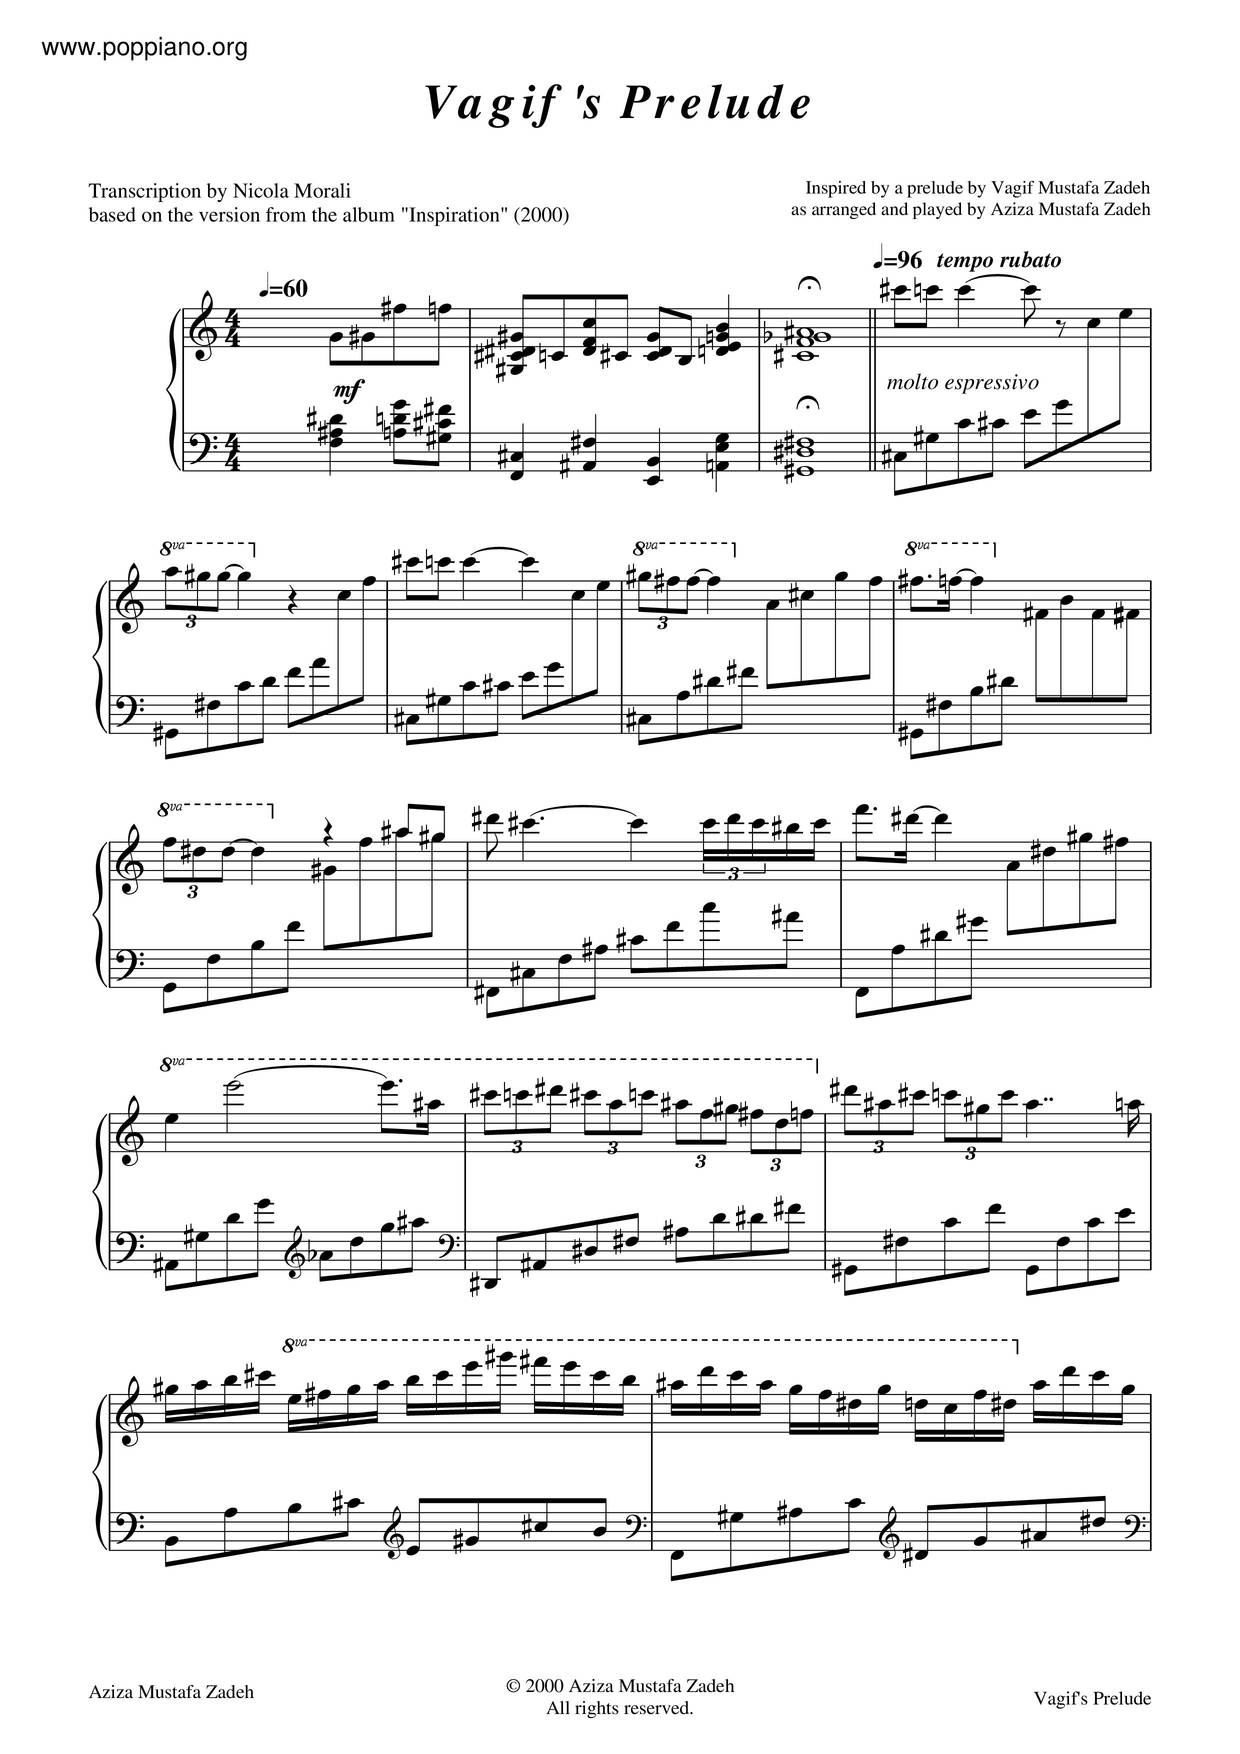 Vagif's Prelude Score